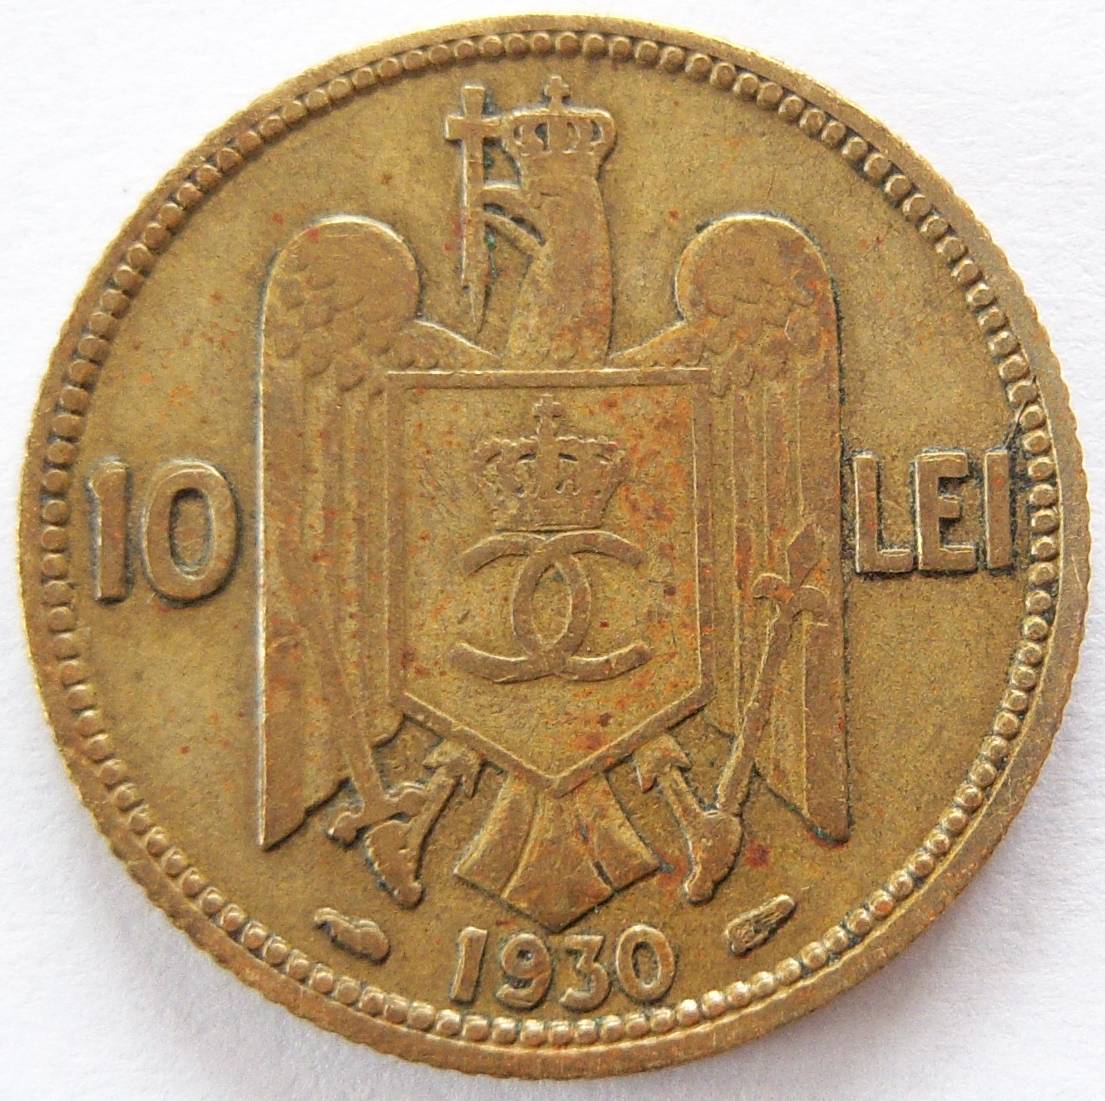  RUMÄNIEN ROMANIA 10 Lei 1930   